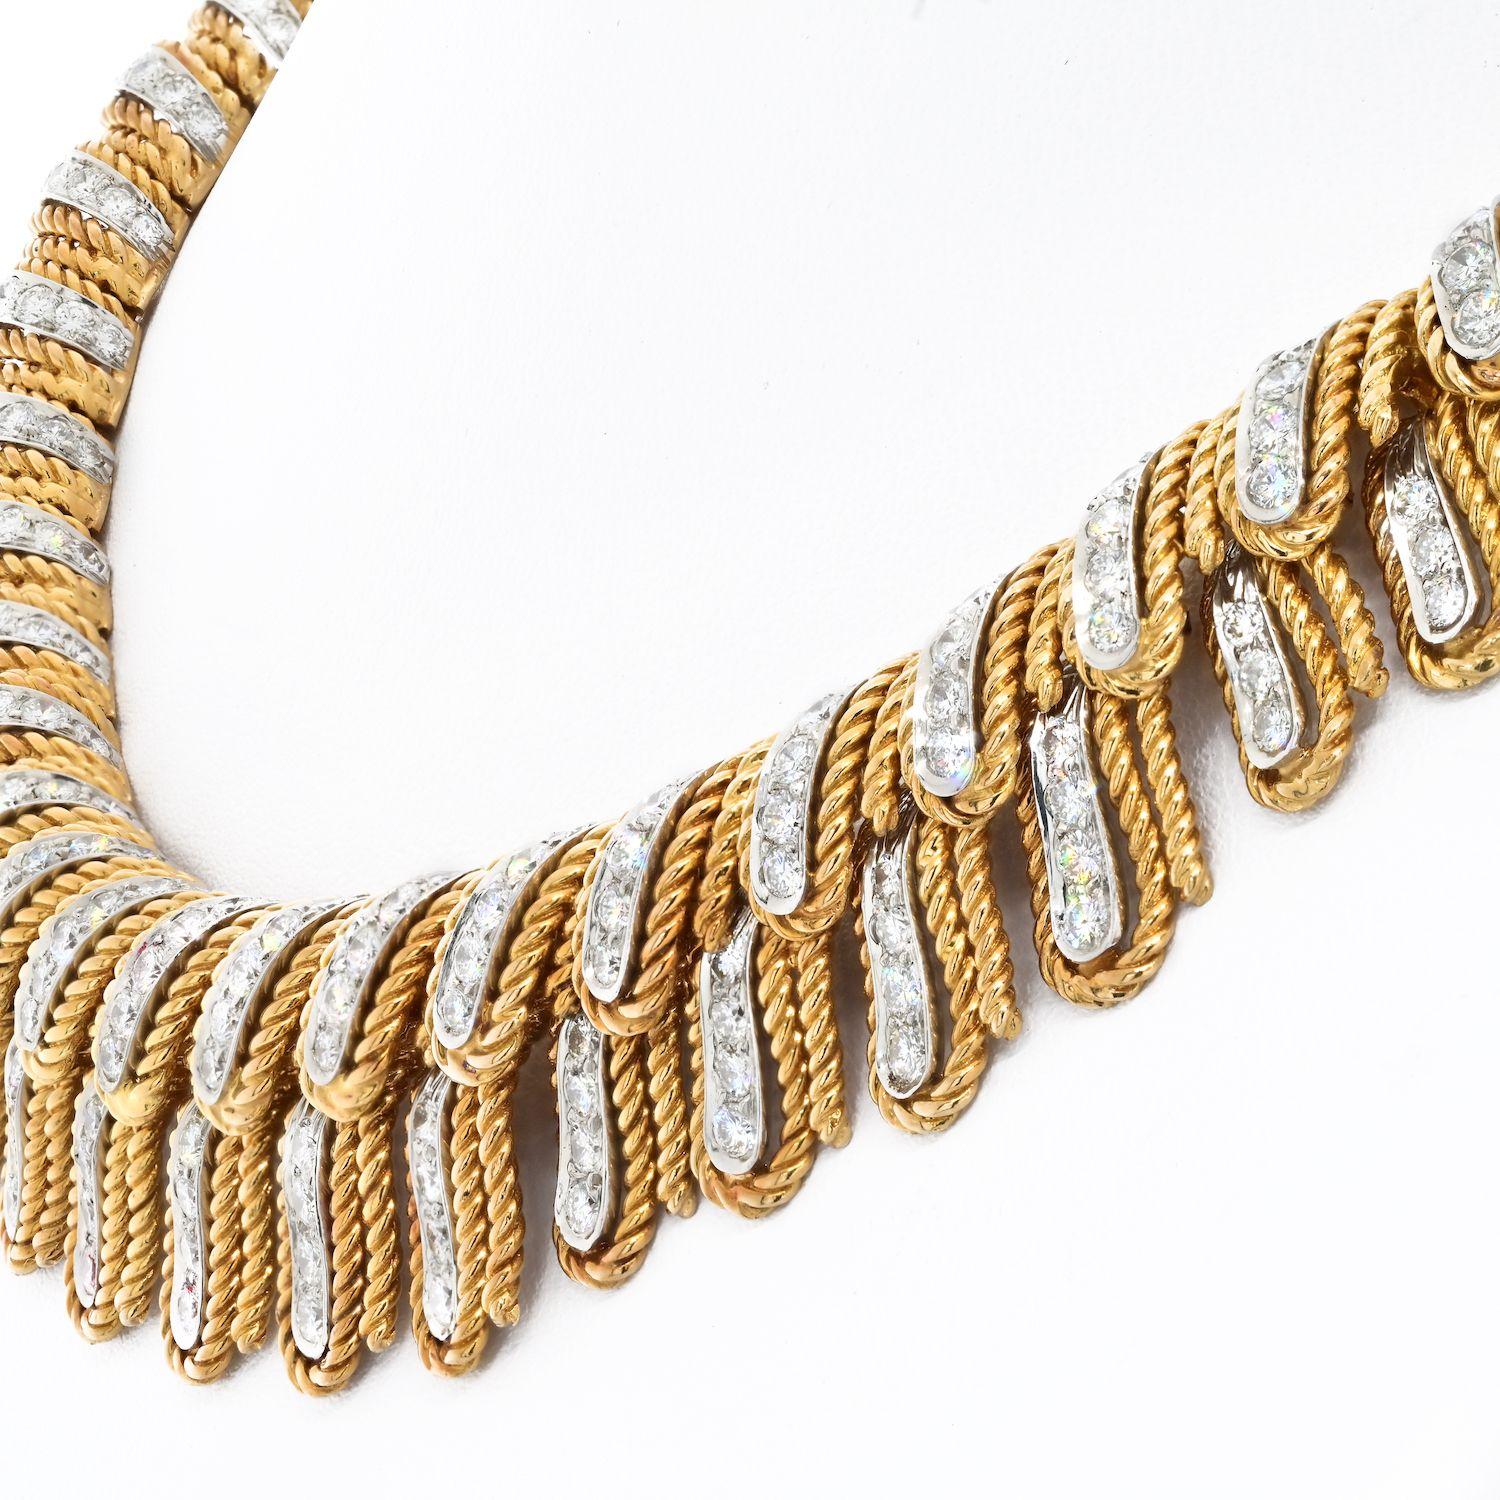 Die David Webb Halskette aus 18 Karat und Platin besticht durch ihr einzigartiges Design aus diamantbesetzten Federn in Seilumrandungen. Die abgestufte Größe der Federn trägt zu seiner Schönheit bei und macht ihn zu einem spektakulären Schmuckstück.